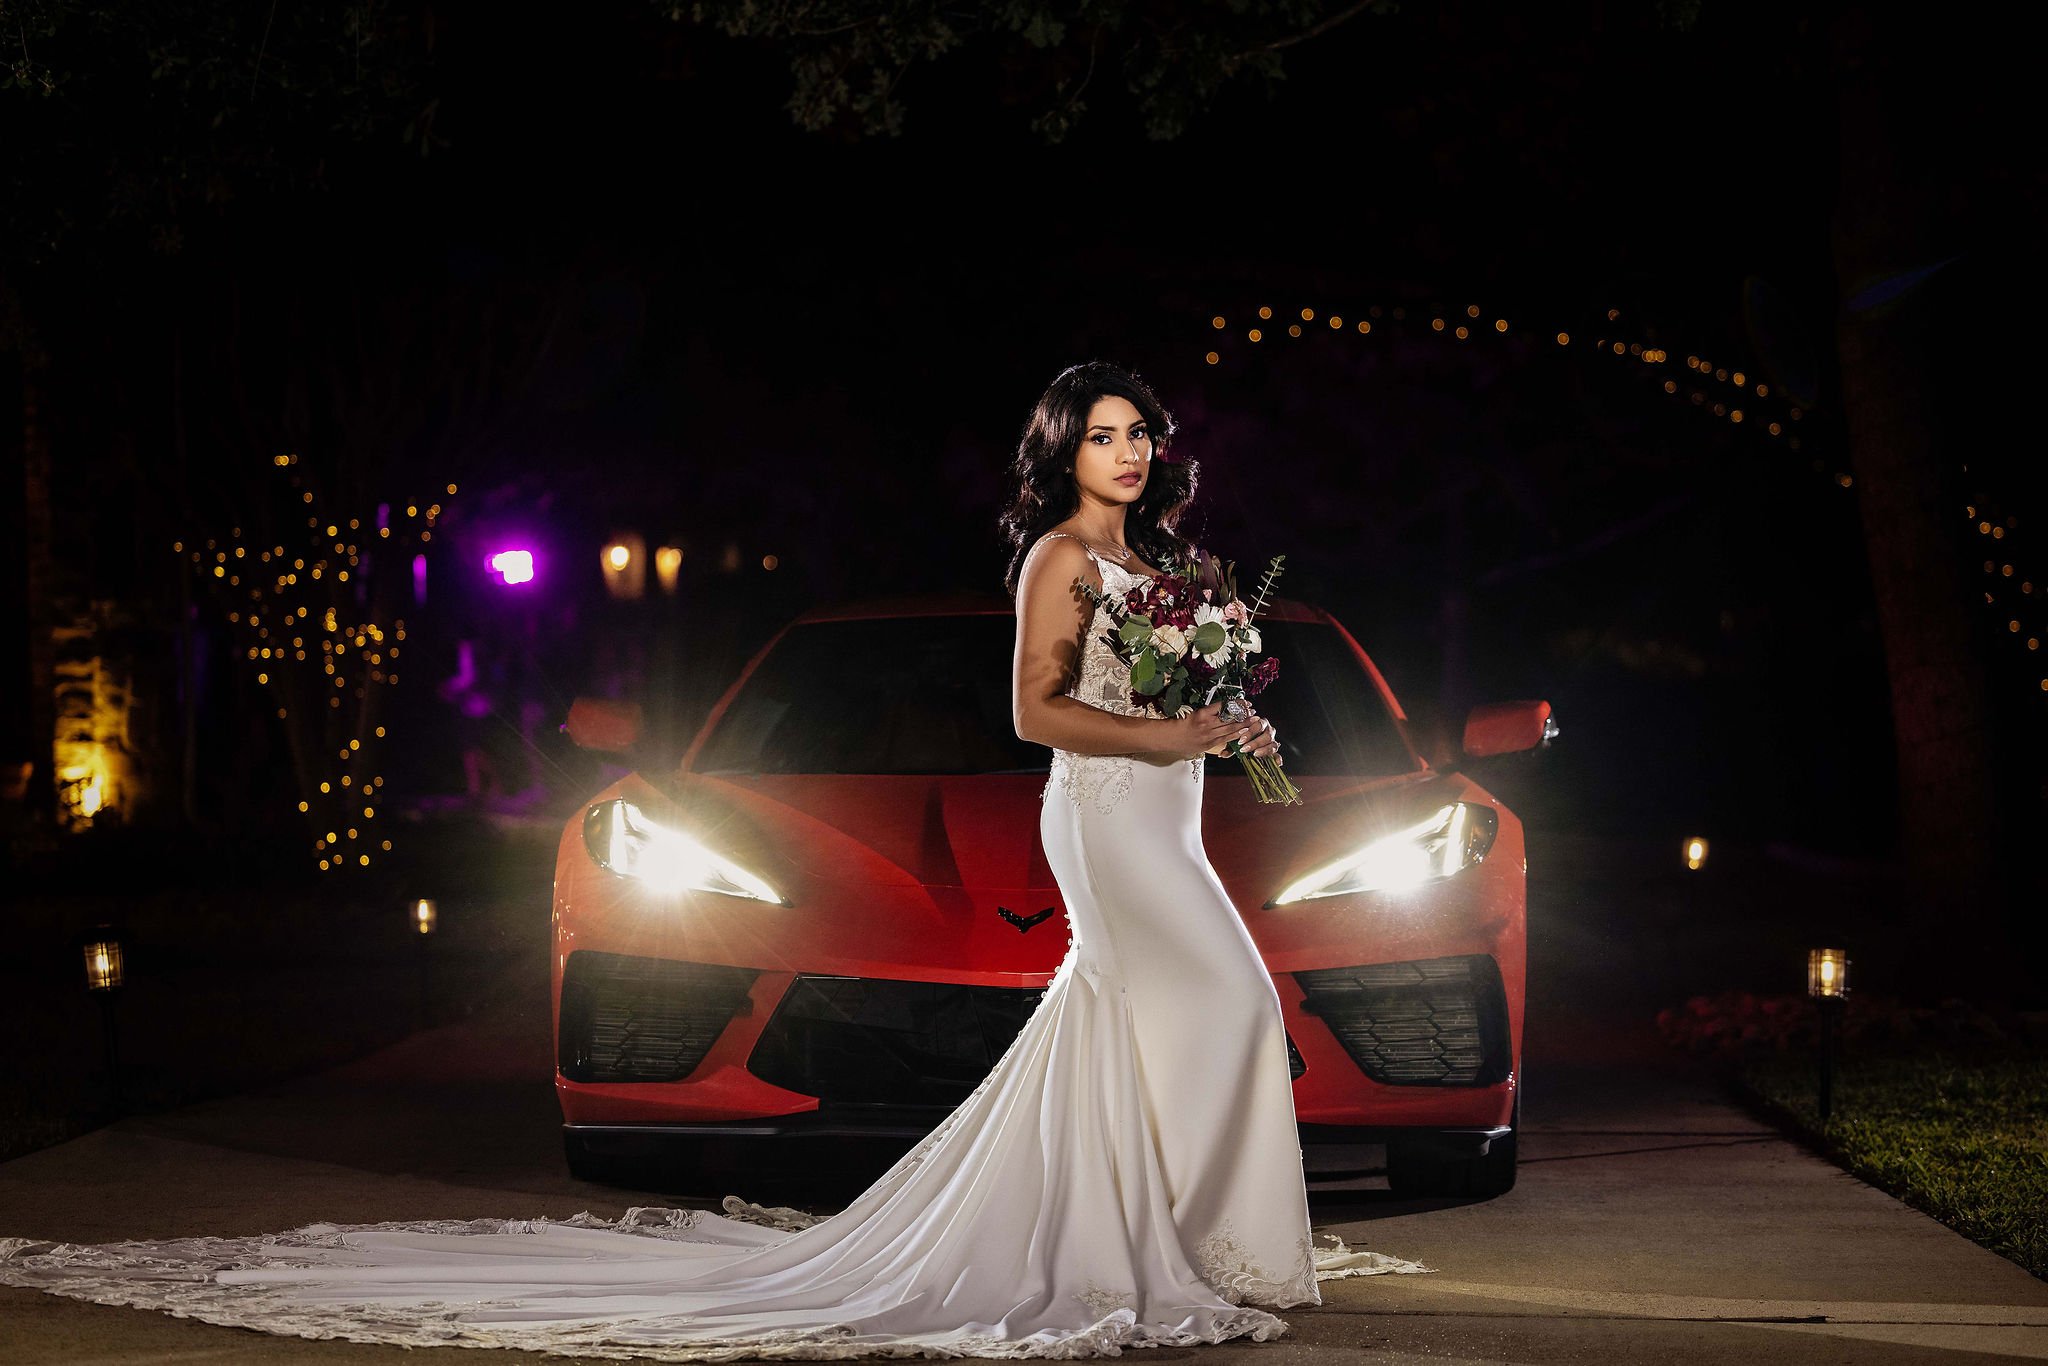 Dallas bride - bride and corvette - dark - moody.jpg